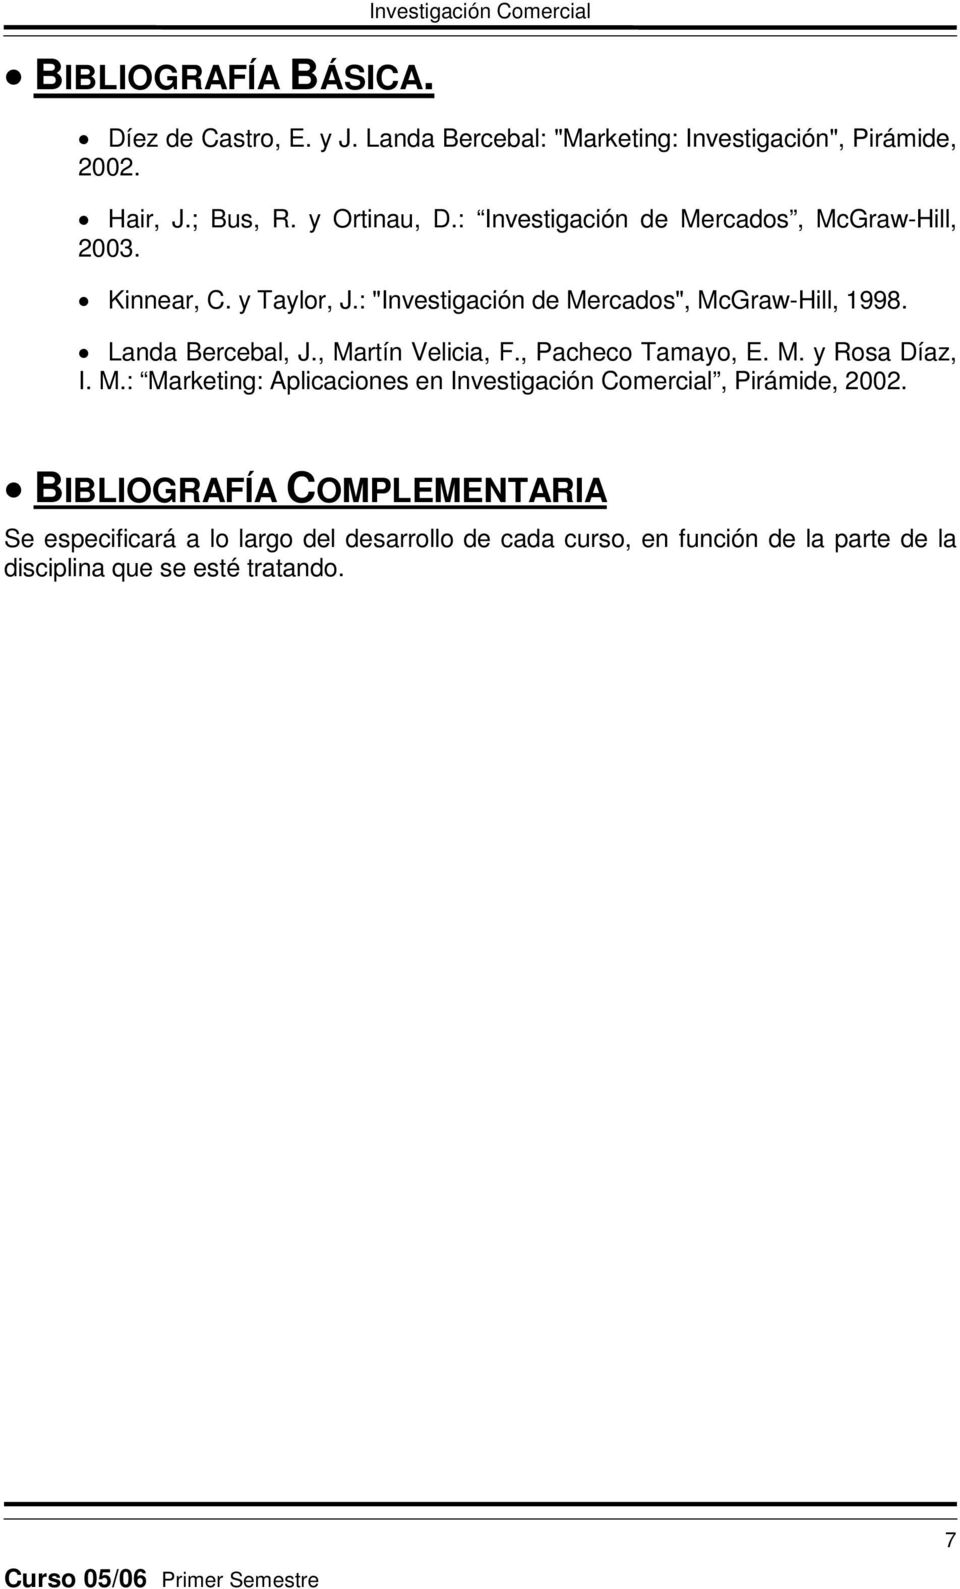 Landa Bercebal, J., Martín Velicia, F., Pacheco Tamayo, E. M. y Rosa Díaz, I. M.: Marketing: Aplicaciones en Investigación Comercial, Pirámide, 2002.